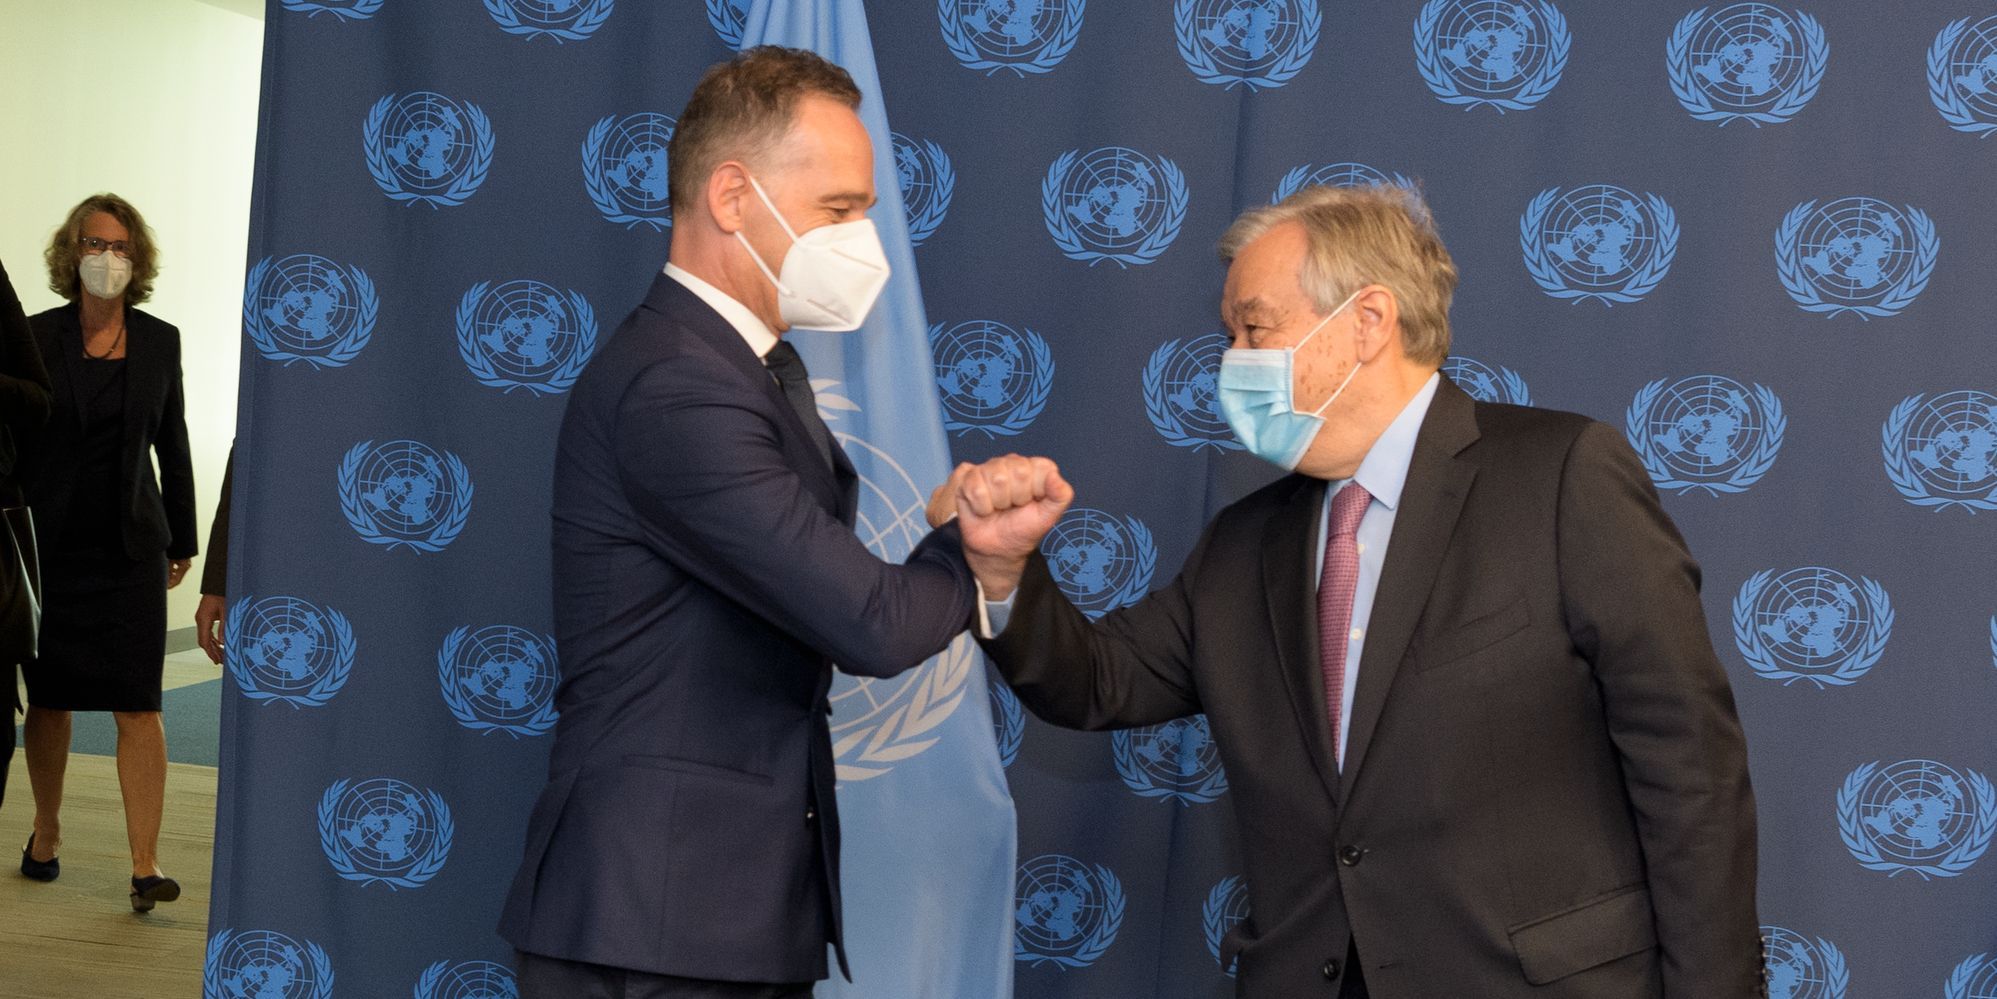 Begrüßung zwischen Generalsekretär António Guterres und Außenminister Heiko Maas